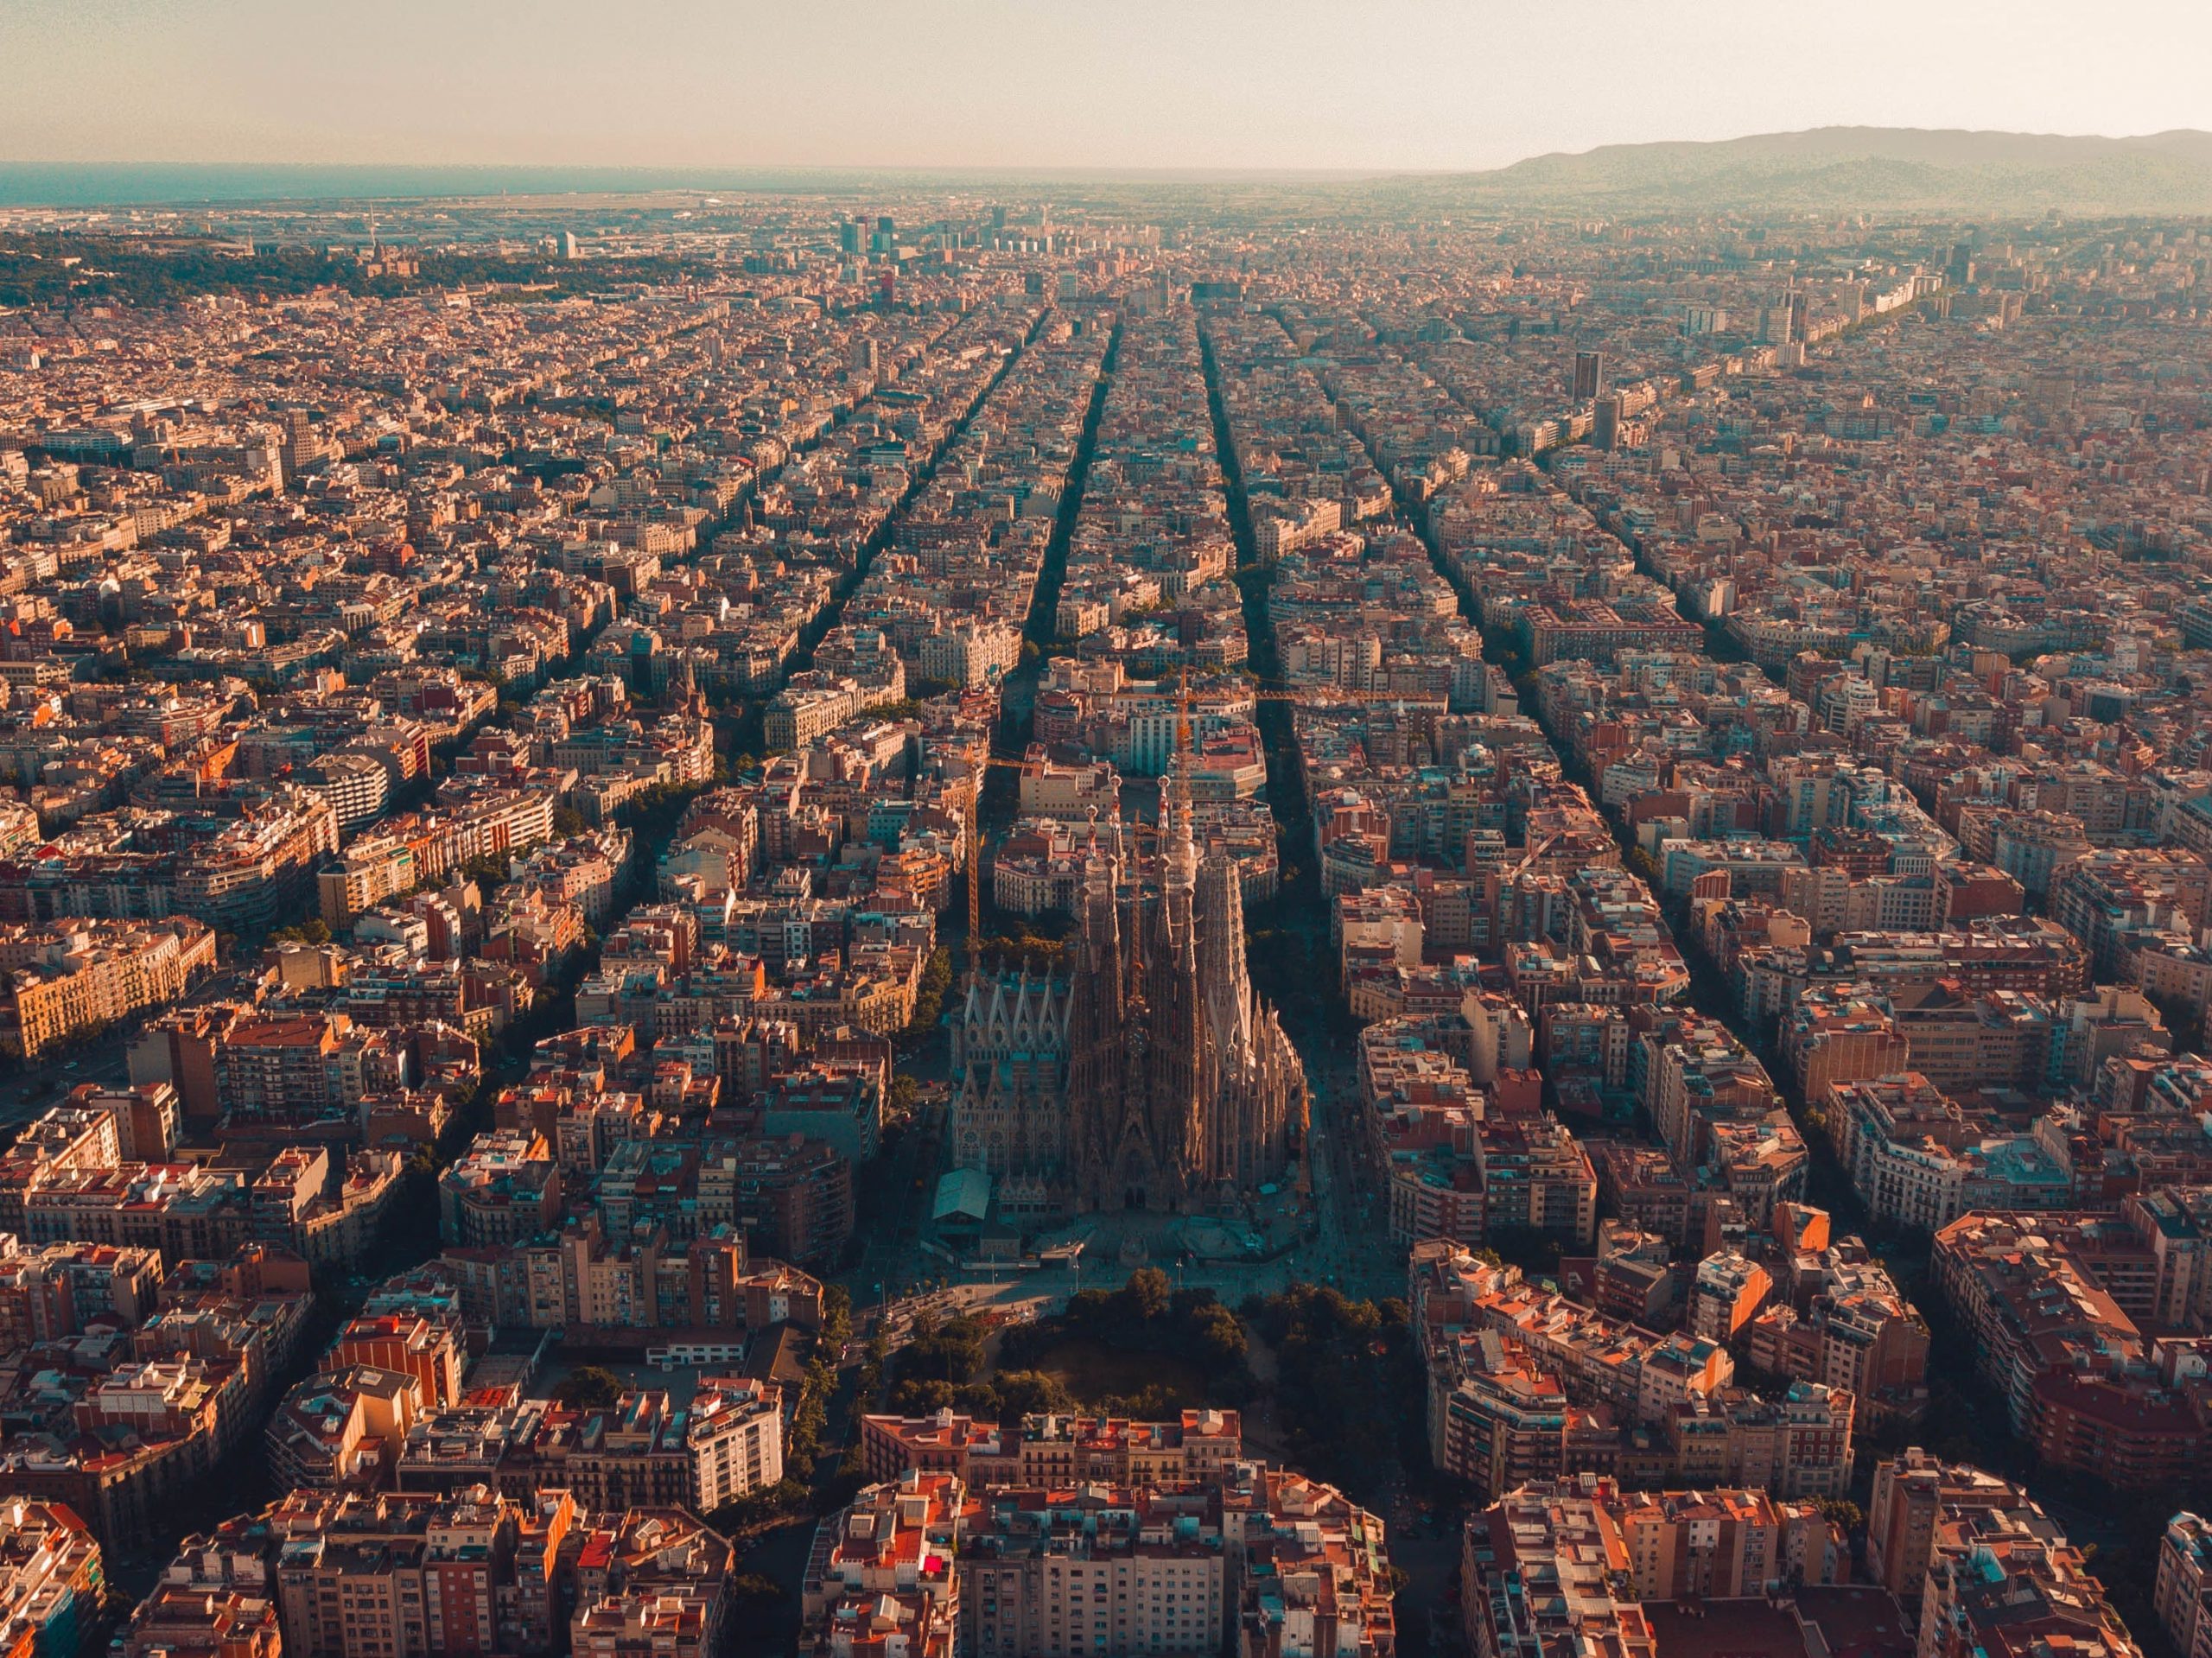 Aerial view of buildings in Barcelona, Spain